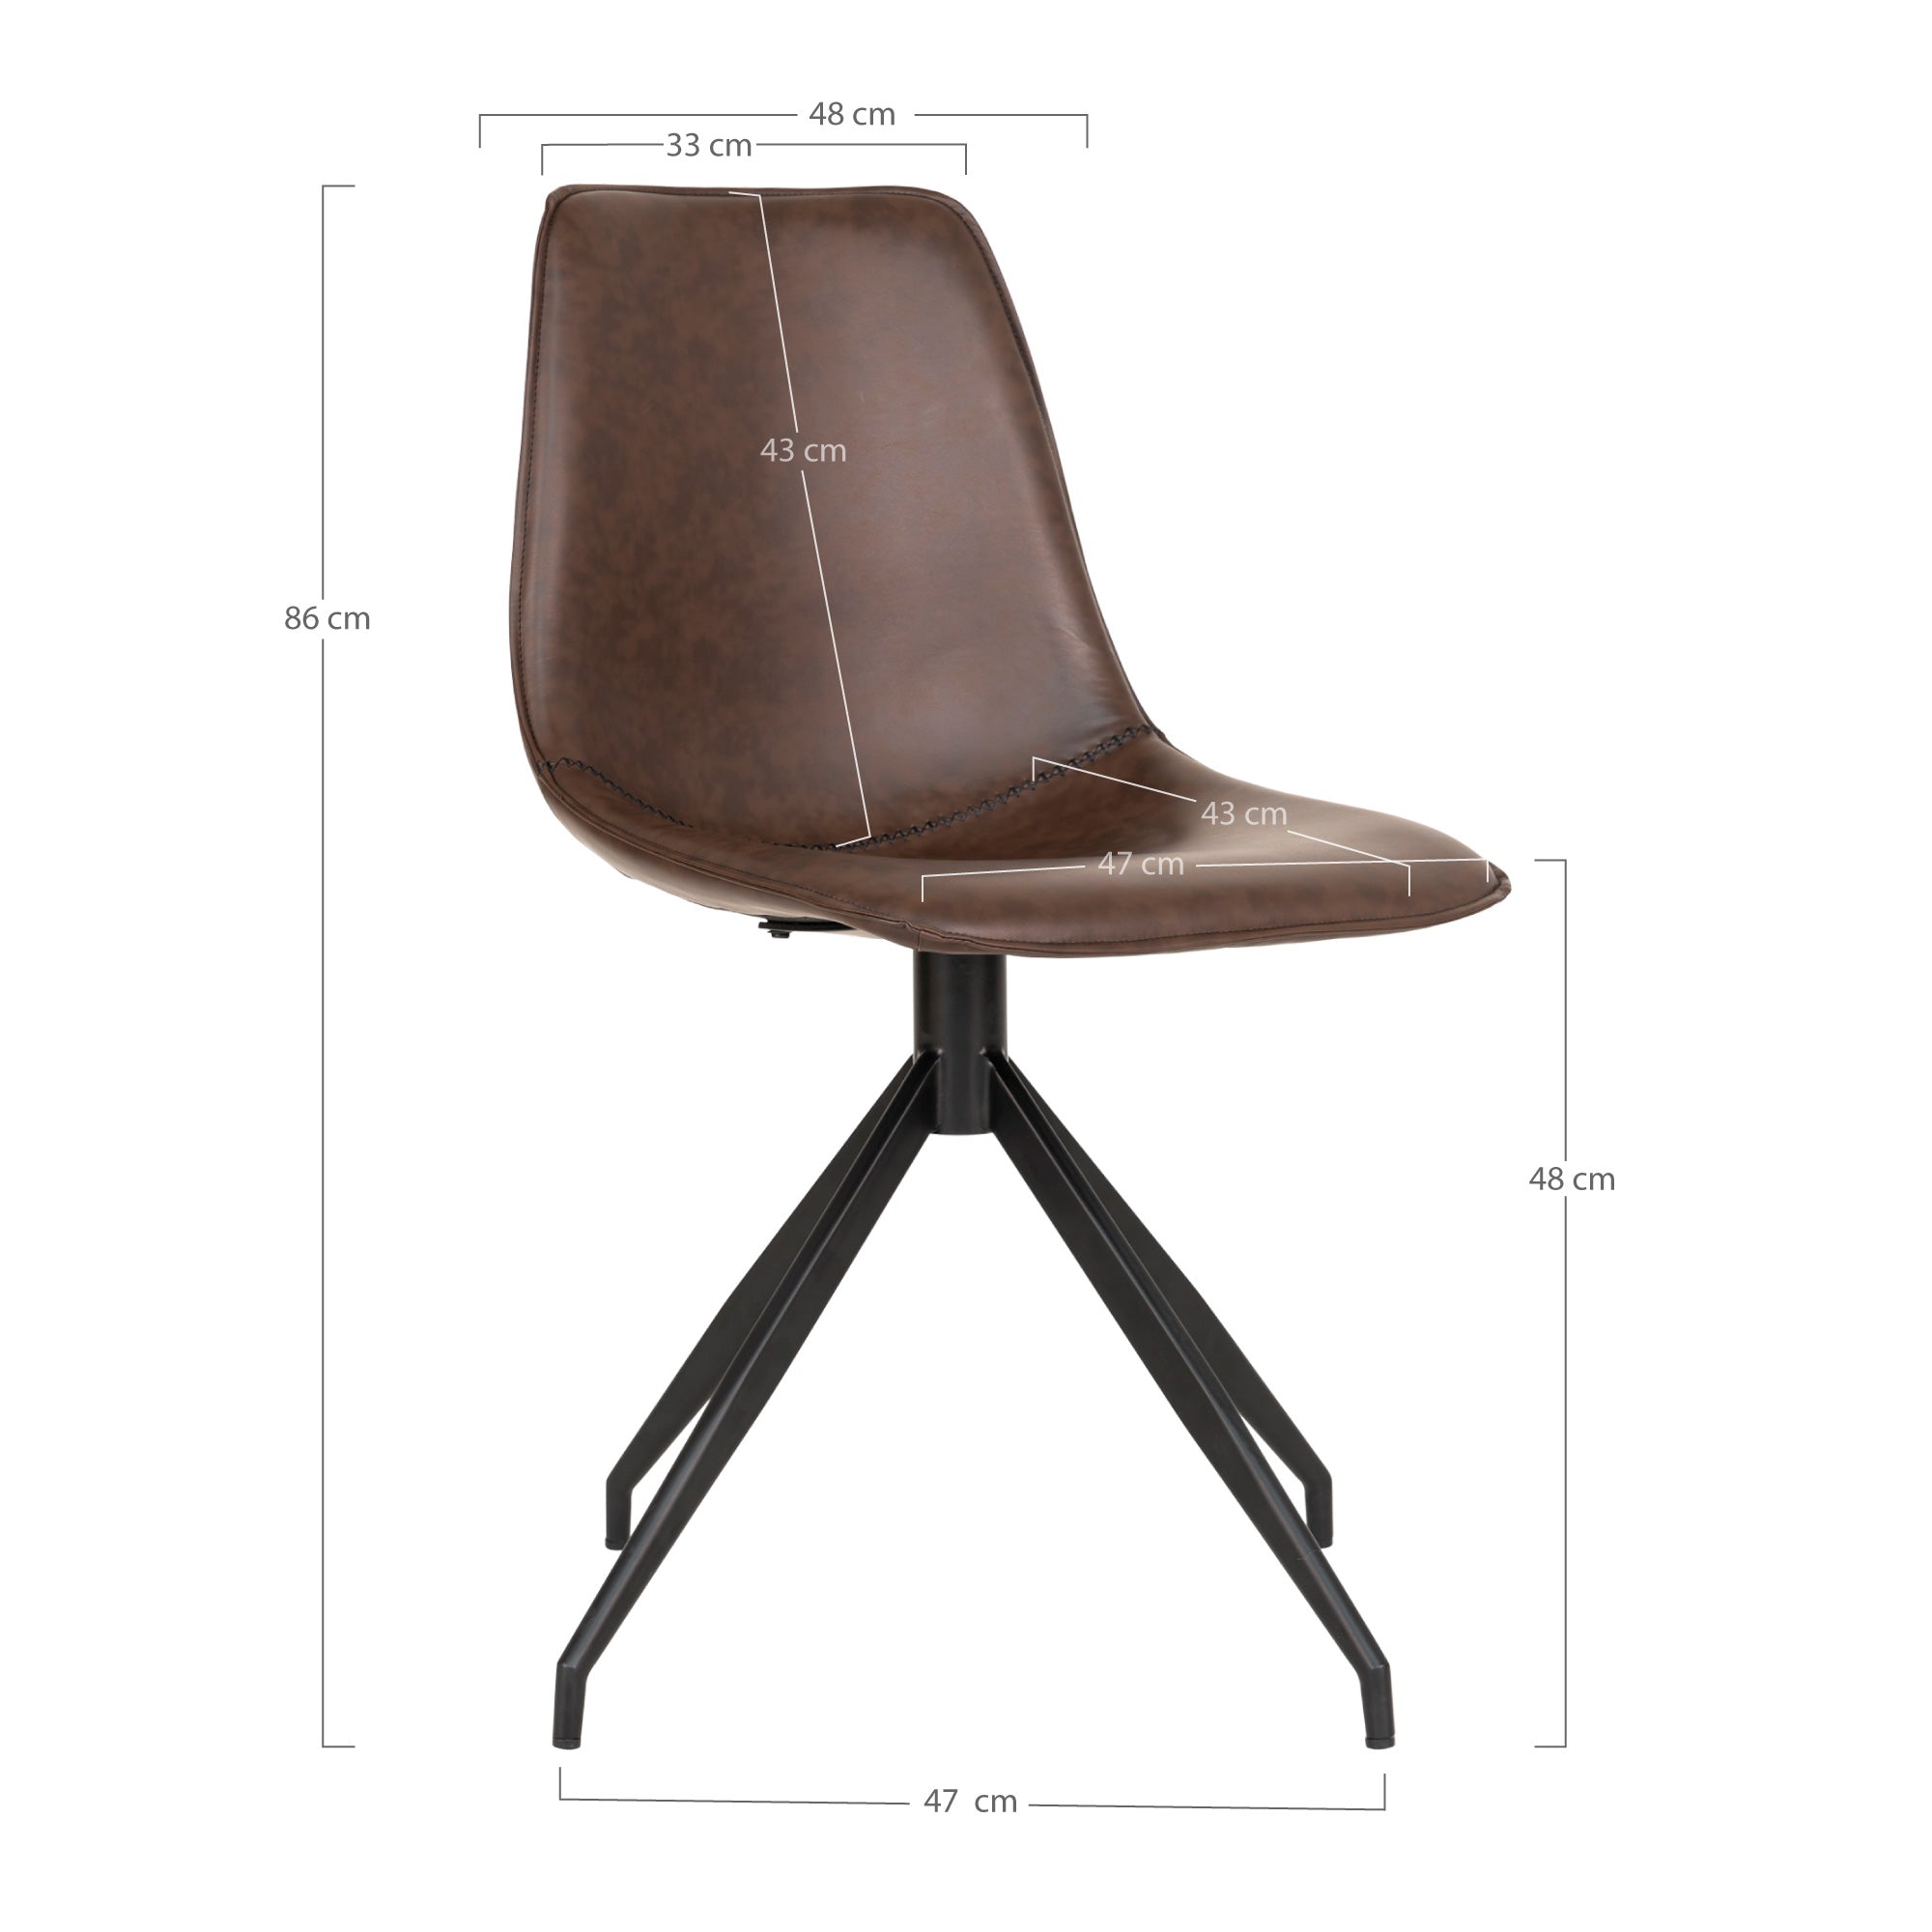 Monaco Spisebordsstol  - Spisebordsstol I Pu Med Drejefod, Mørkebrun Med Sorte Ben, Hn1227 ⎮ Sæt af 2 stk. ⎮ 5713917018451 ⎮ 1001280 